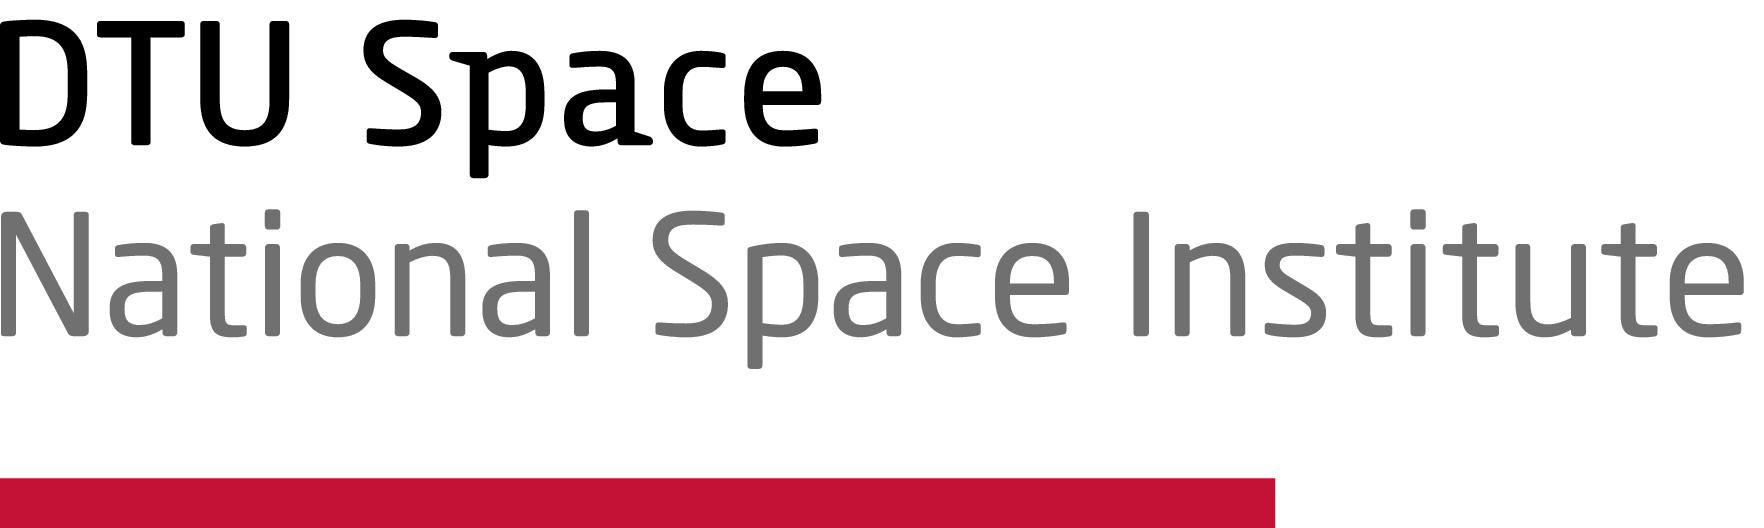 DTU-Space-logo-A